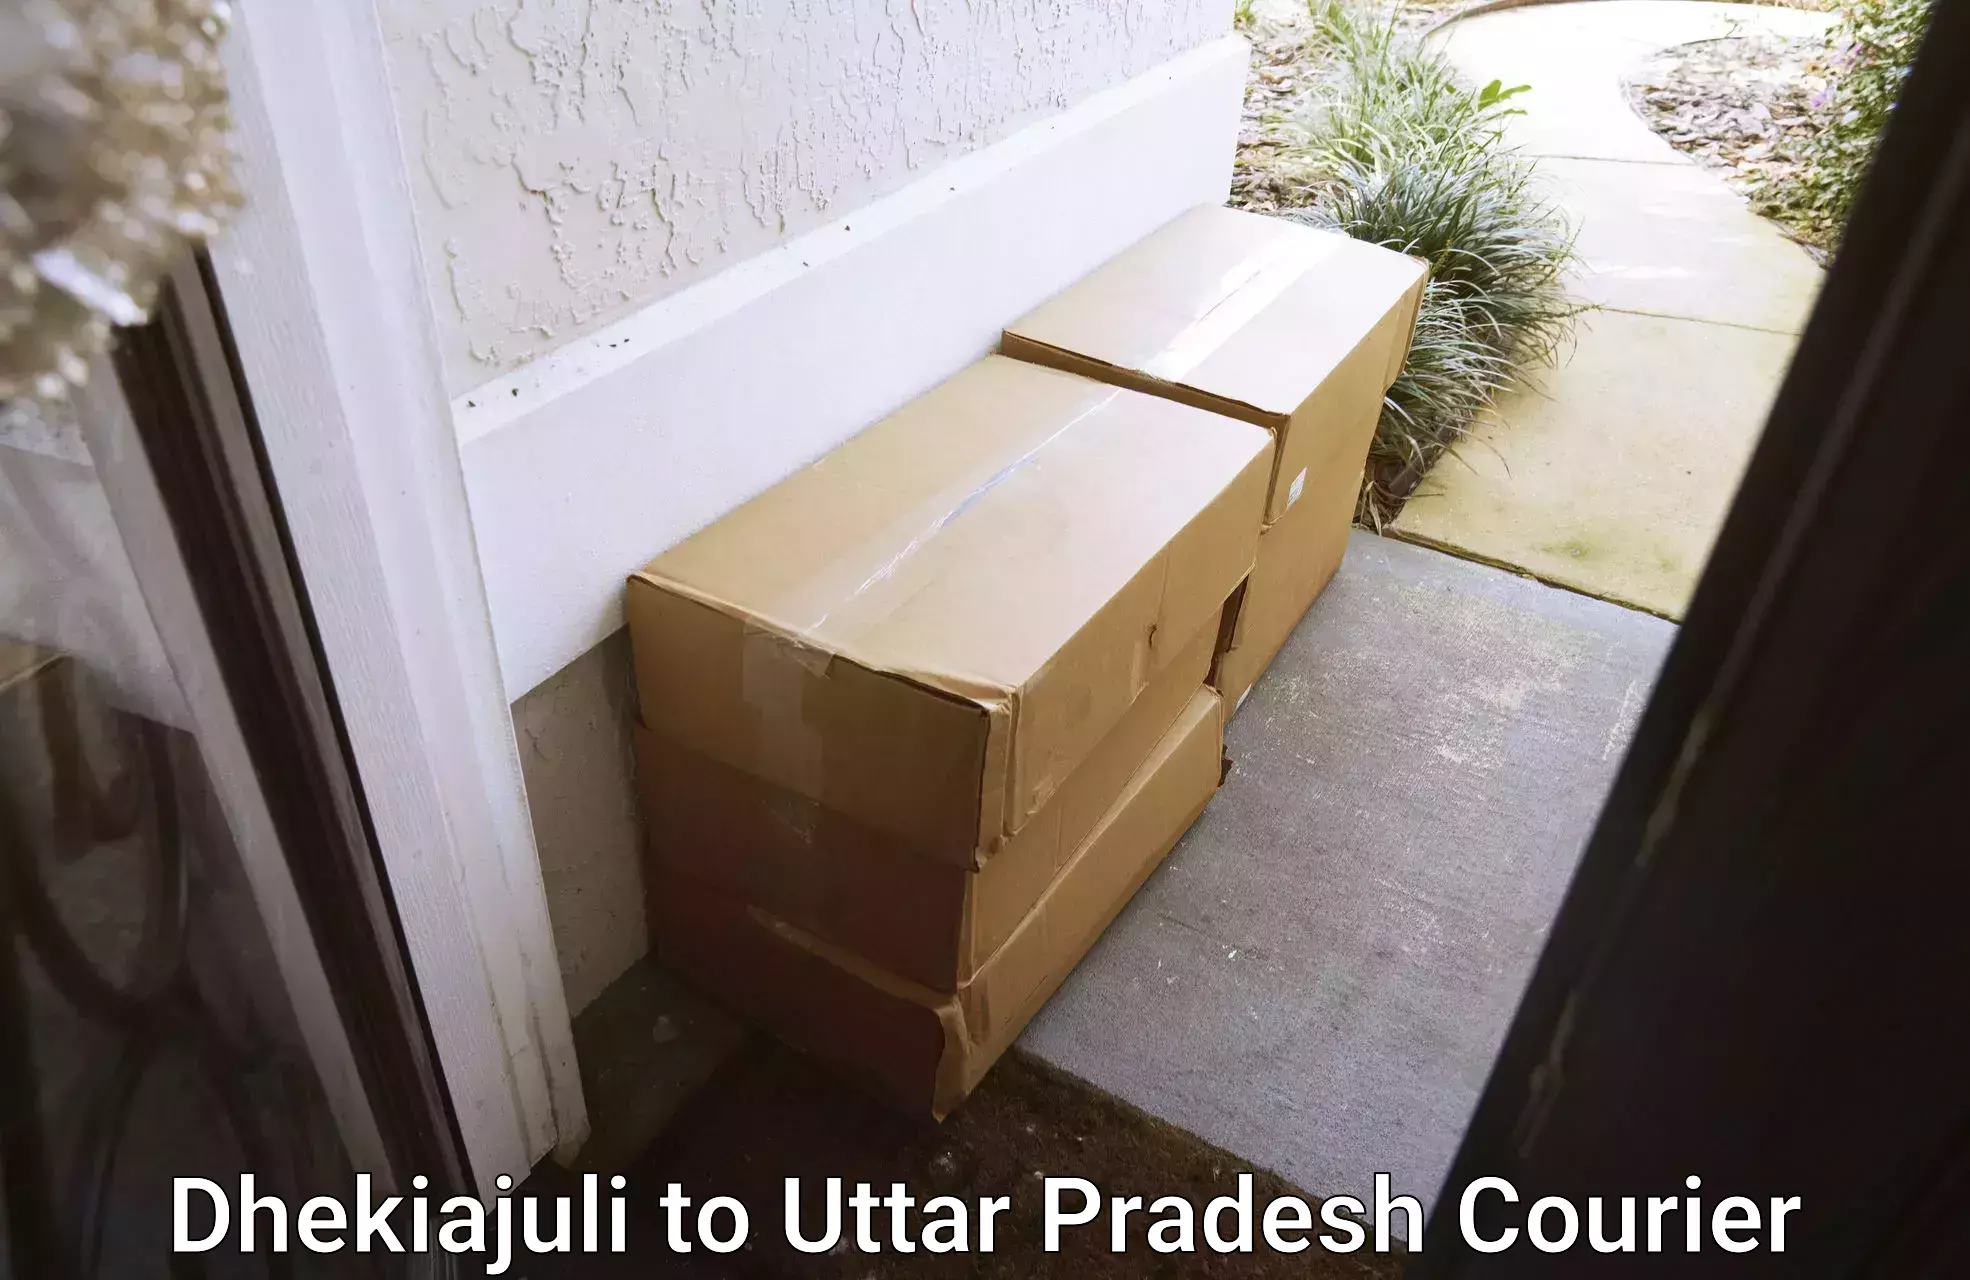 Online courier booking Dhekiajuli to Gorakhpur